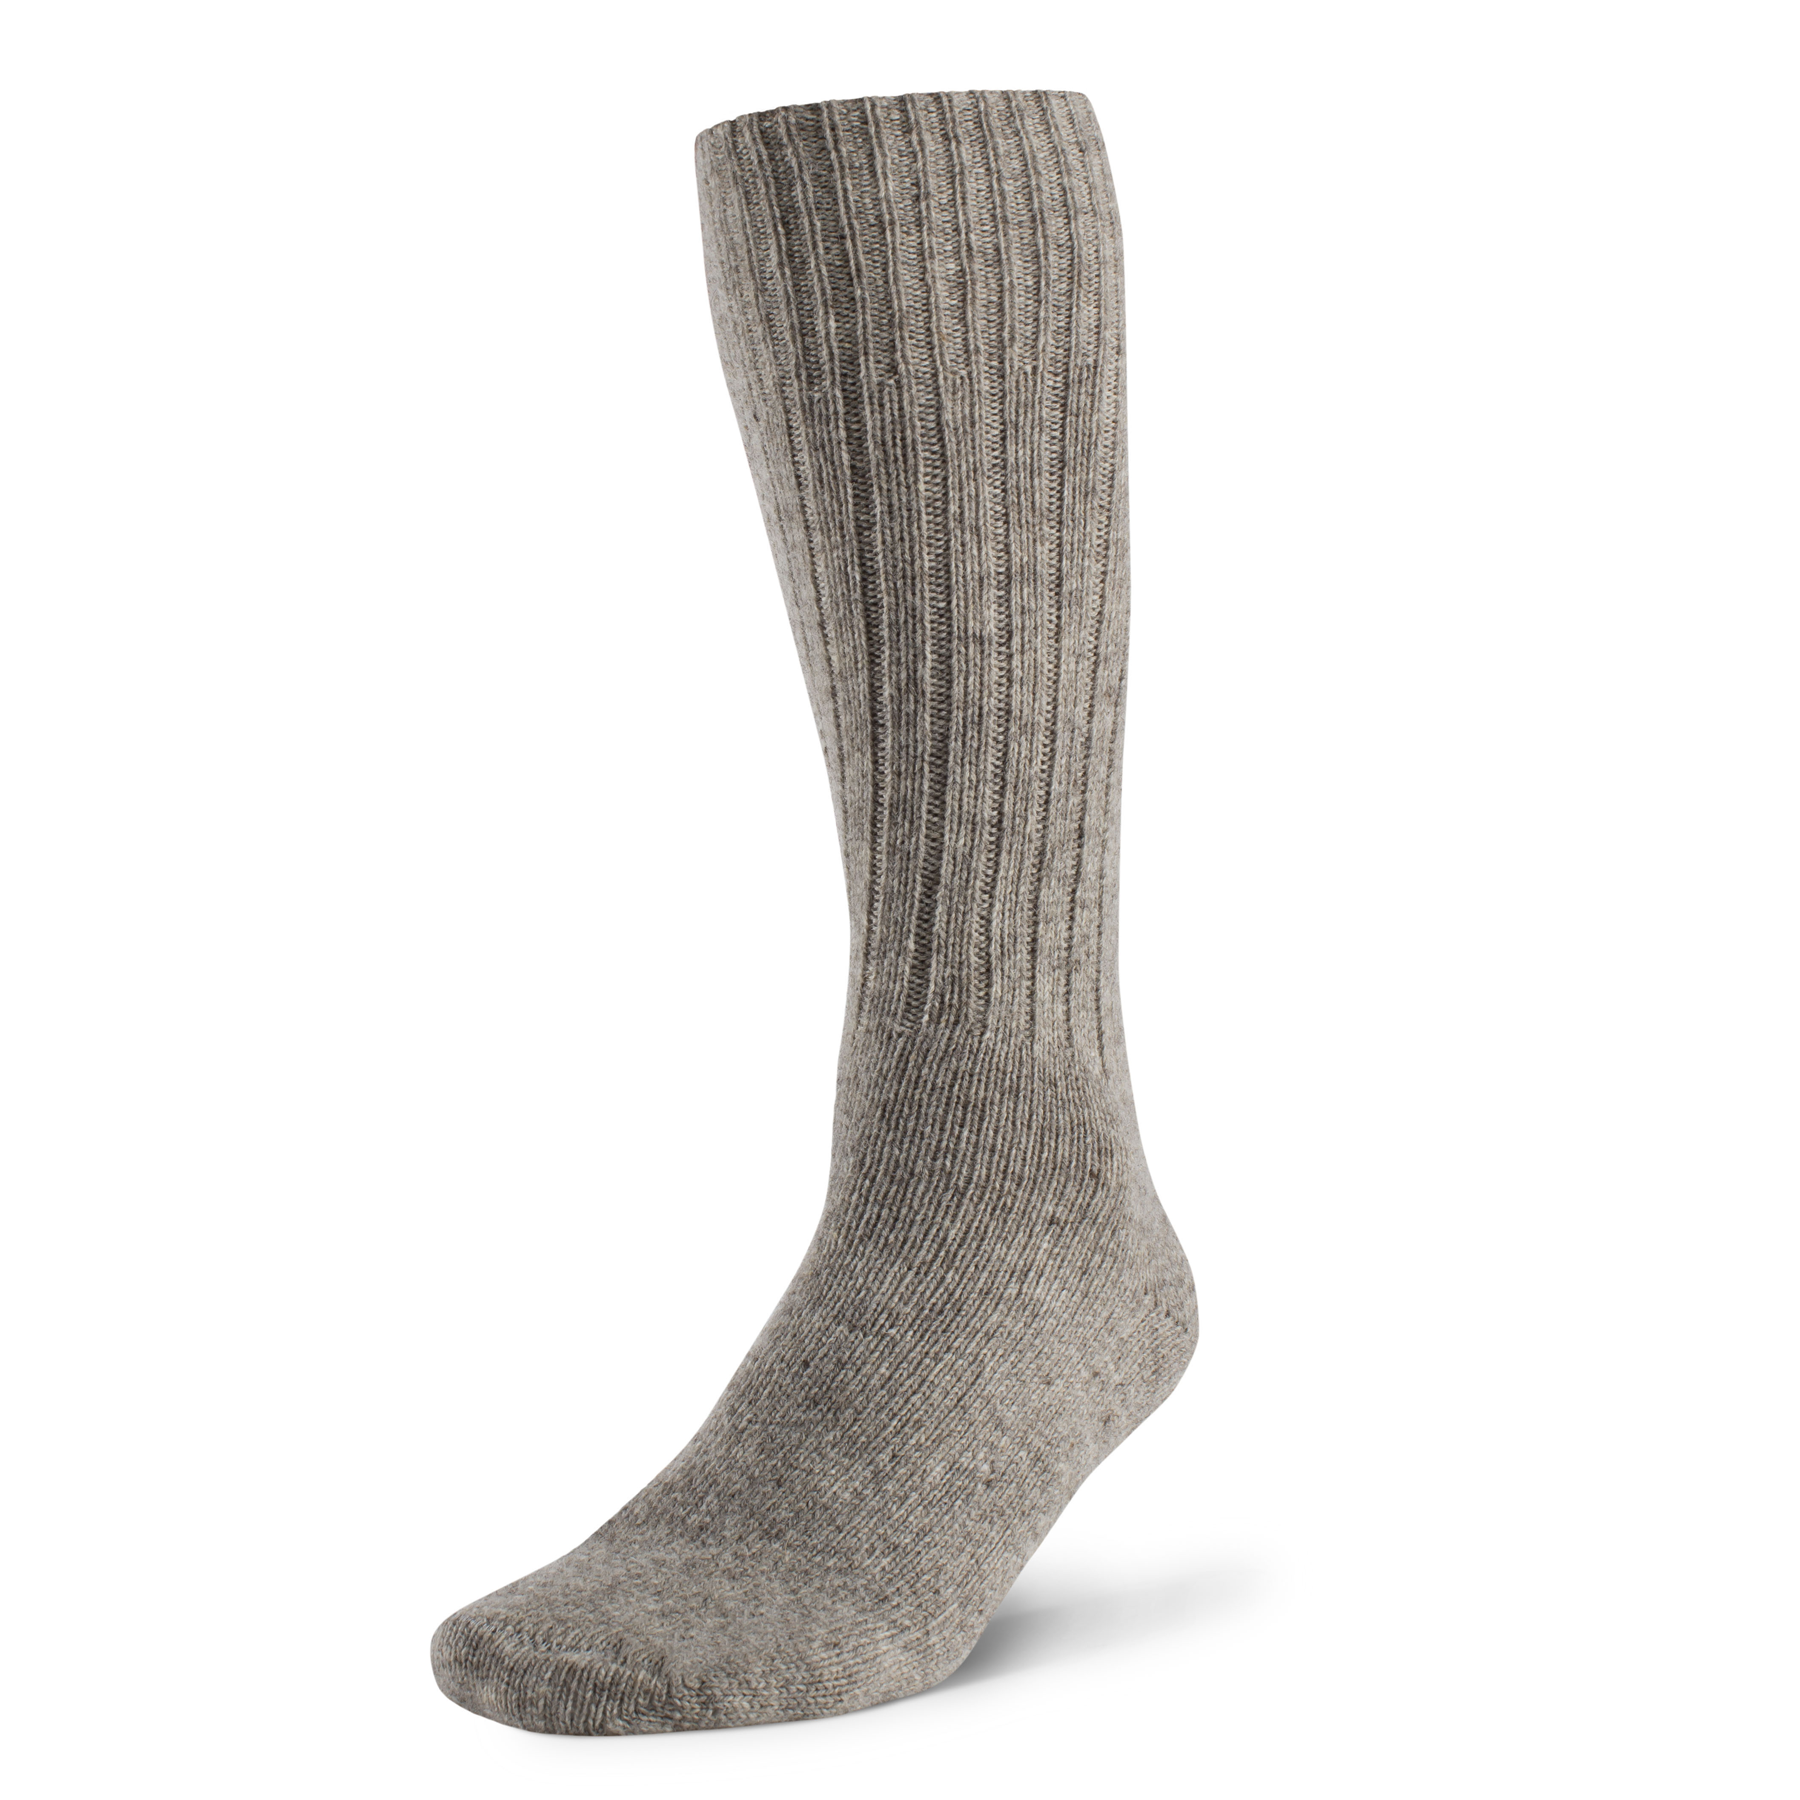 Men's Federal Wool Socks